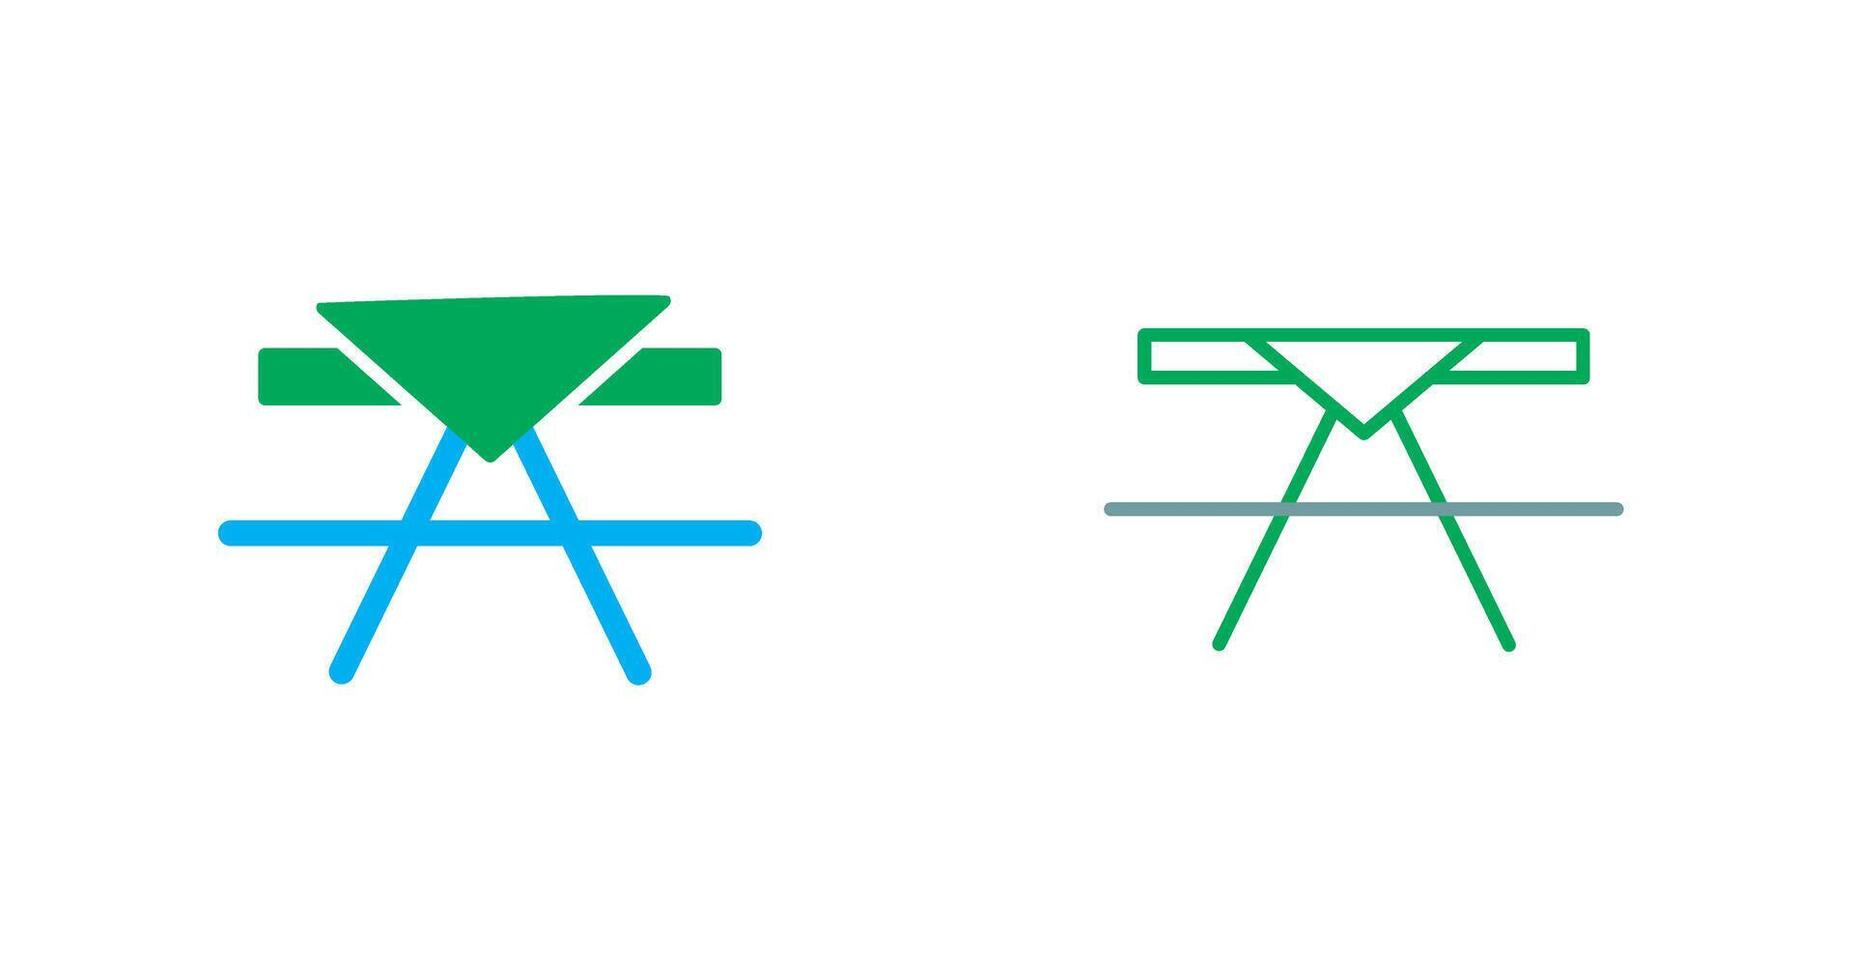 Picknicktisch-Symbol vektor